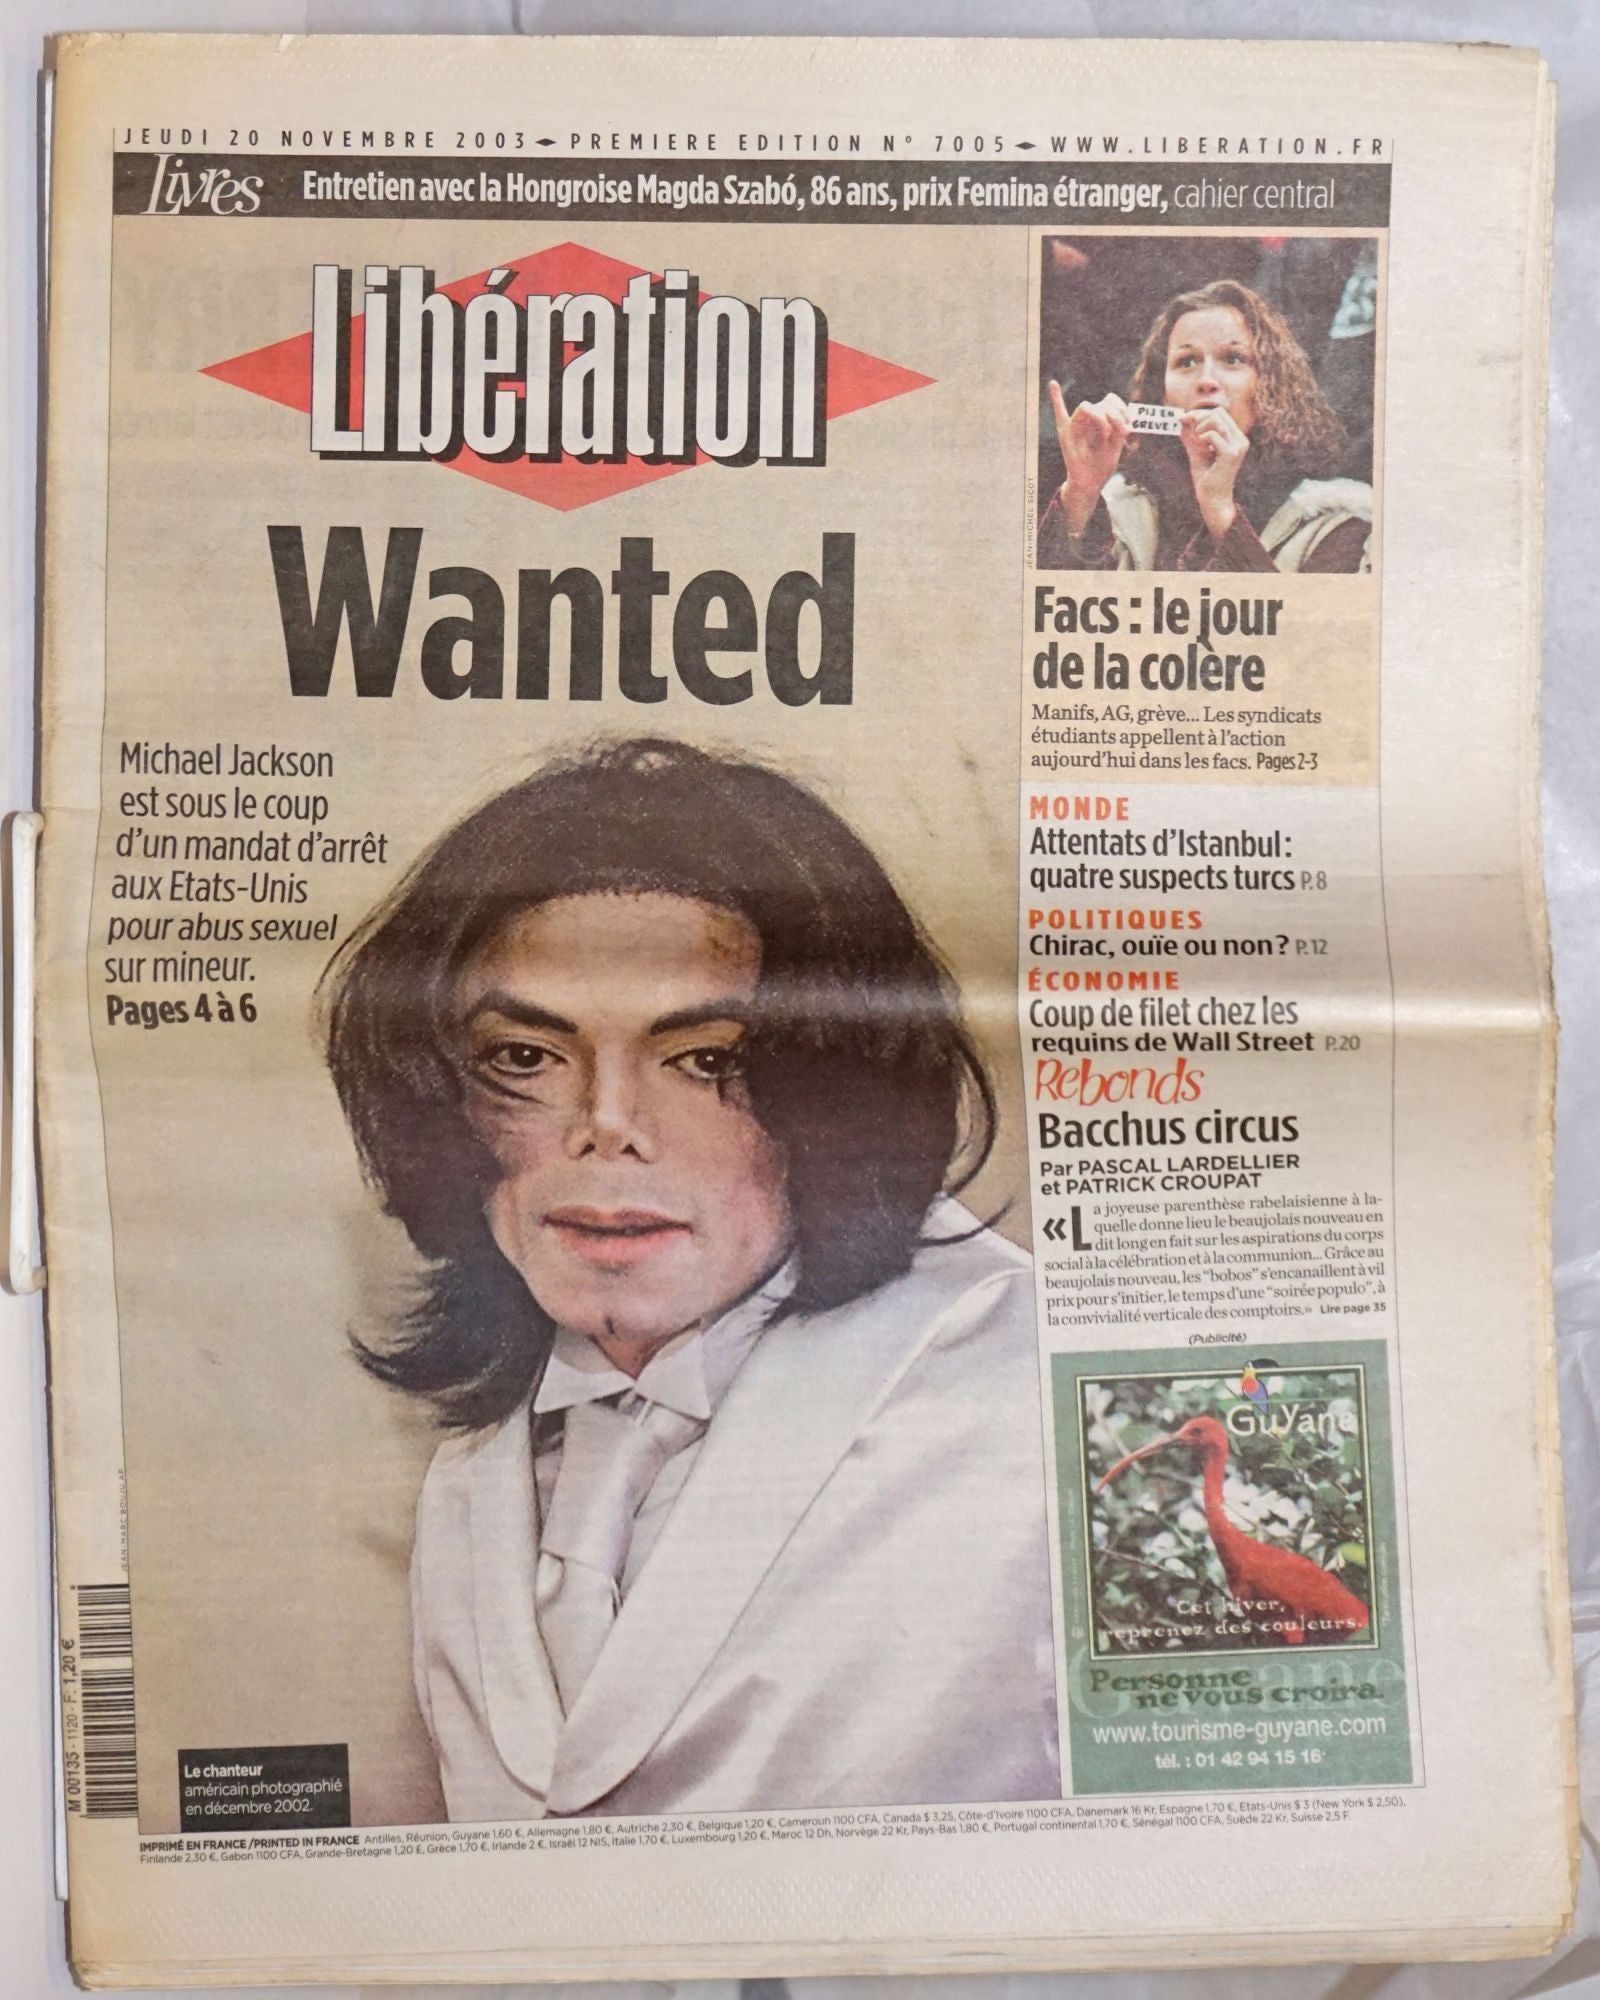 Liberation: Jeudi 20, Novembre 2004; Premiere edition #7005